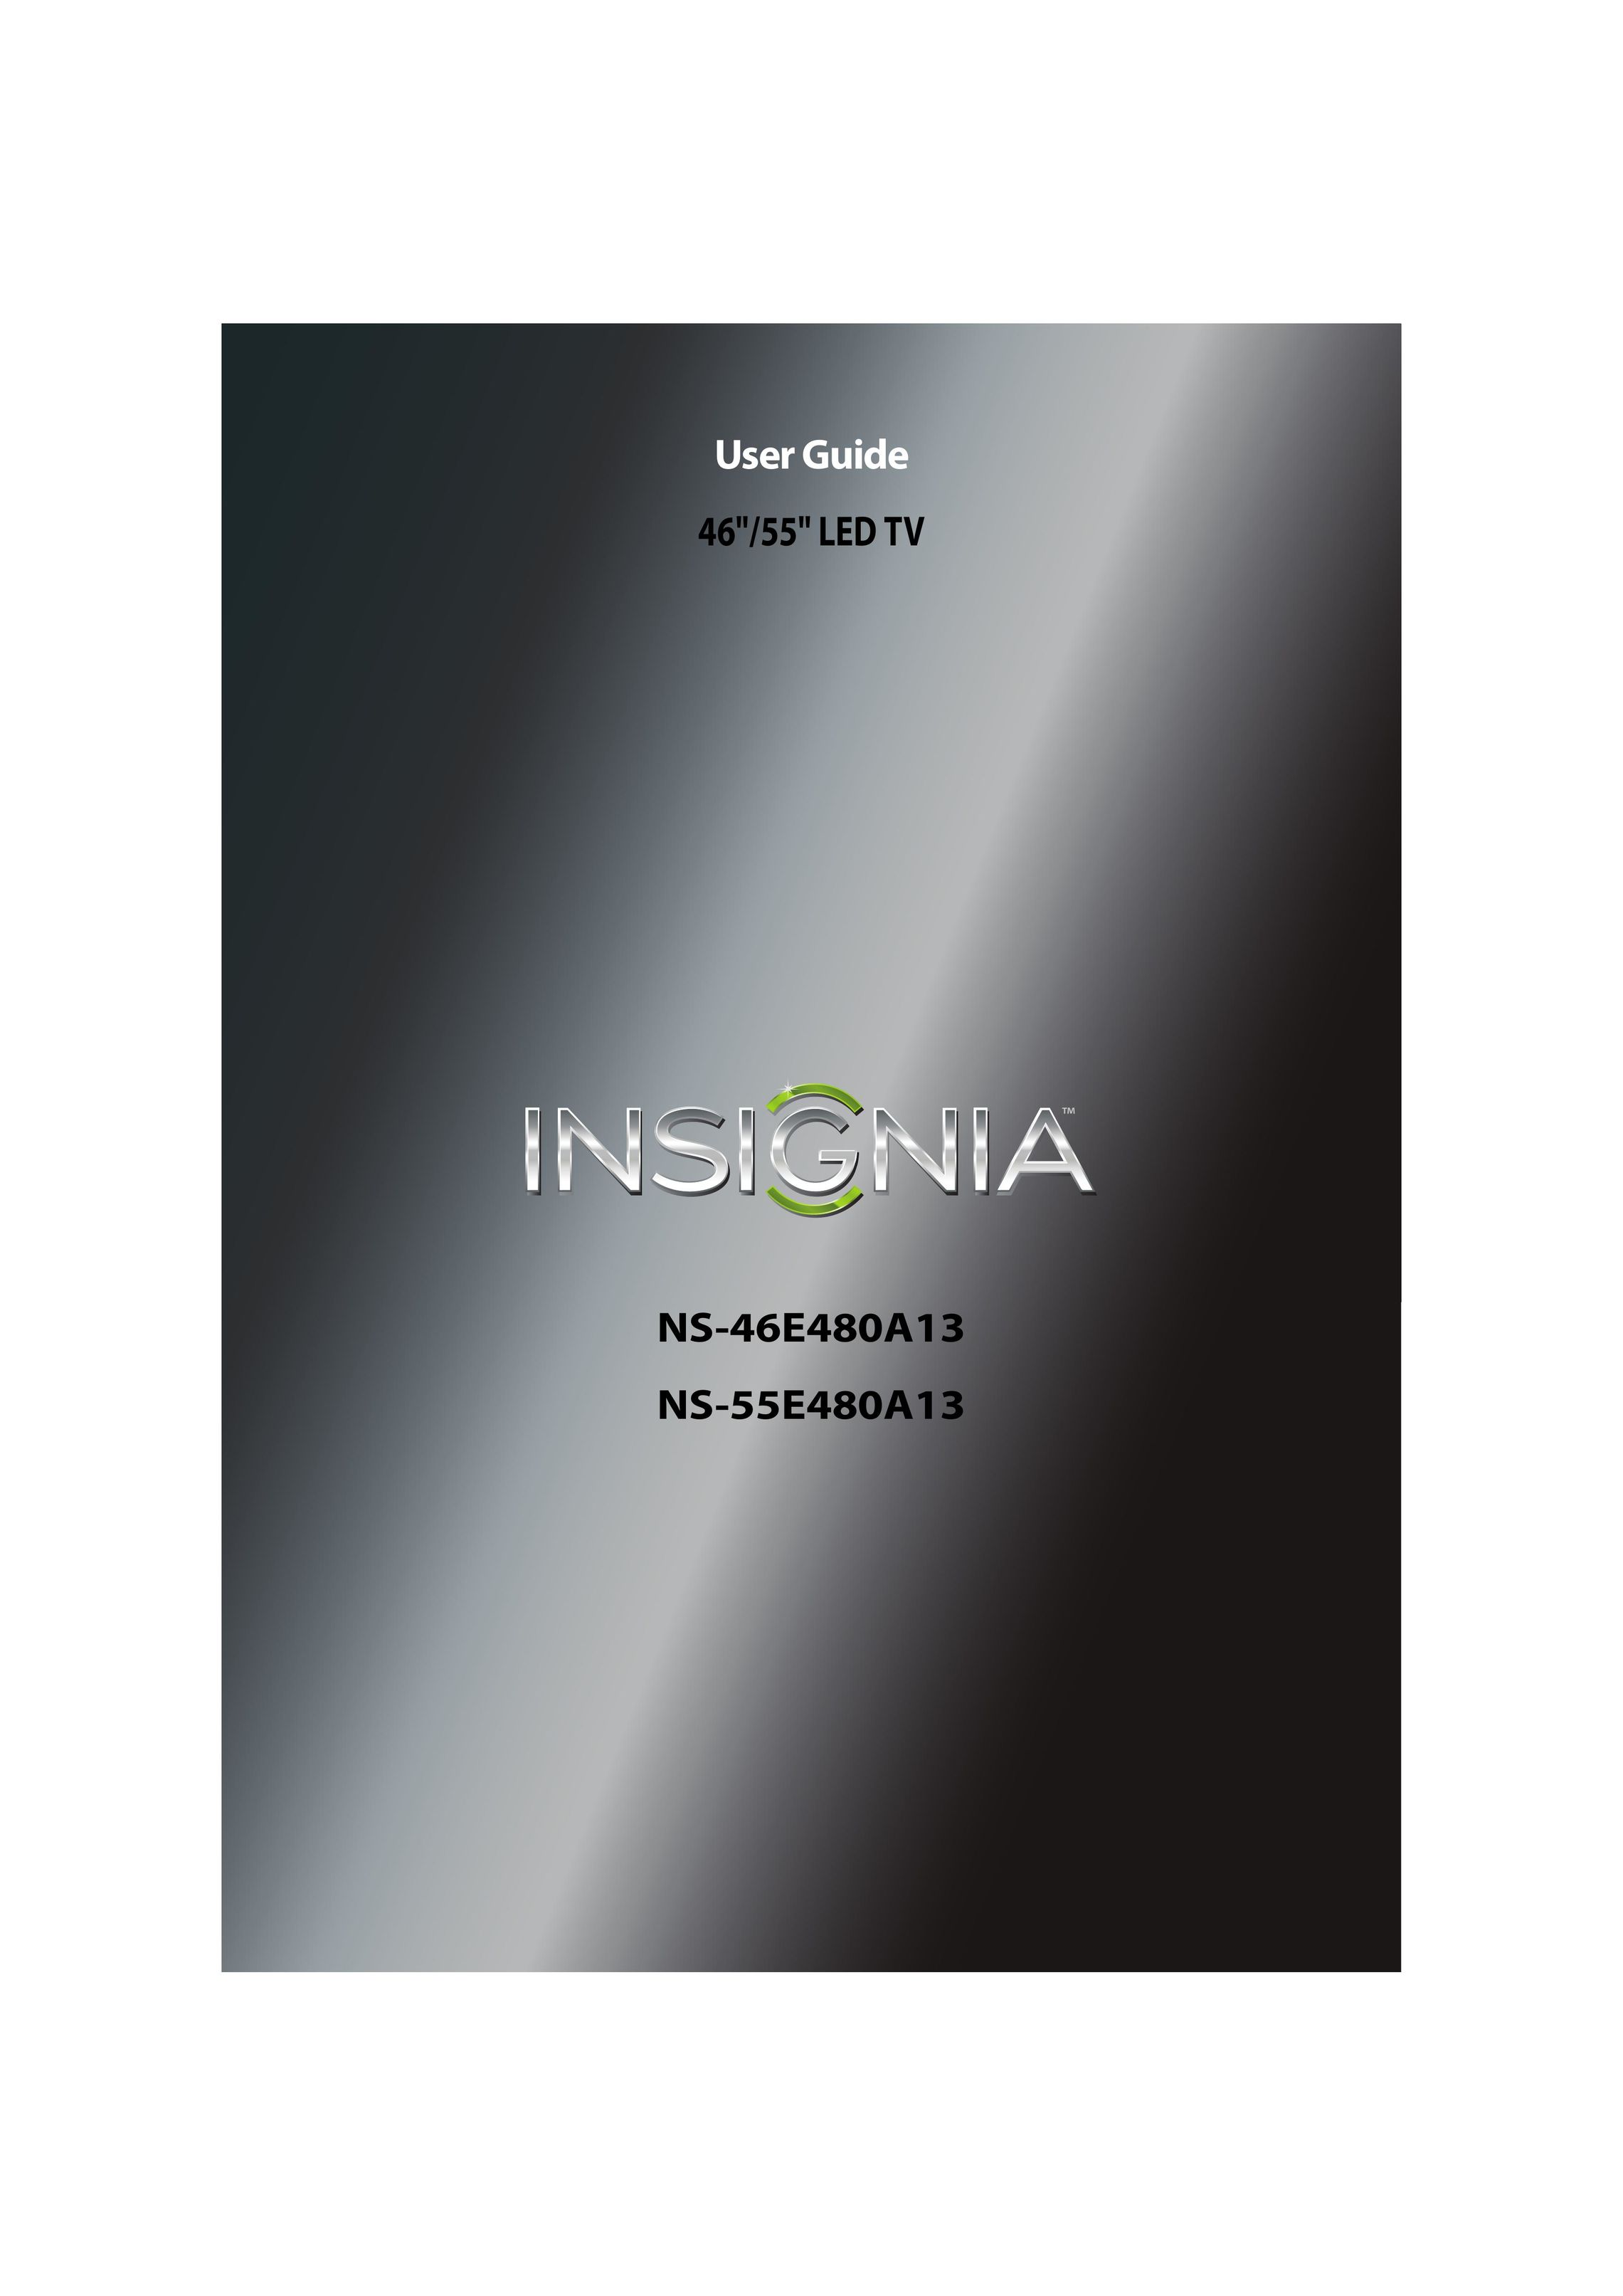 Insignia NS-46E480A13 Car Satellite TV System User Manual